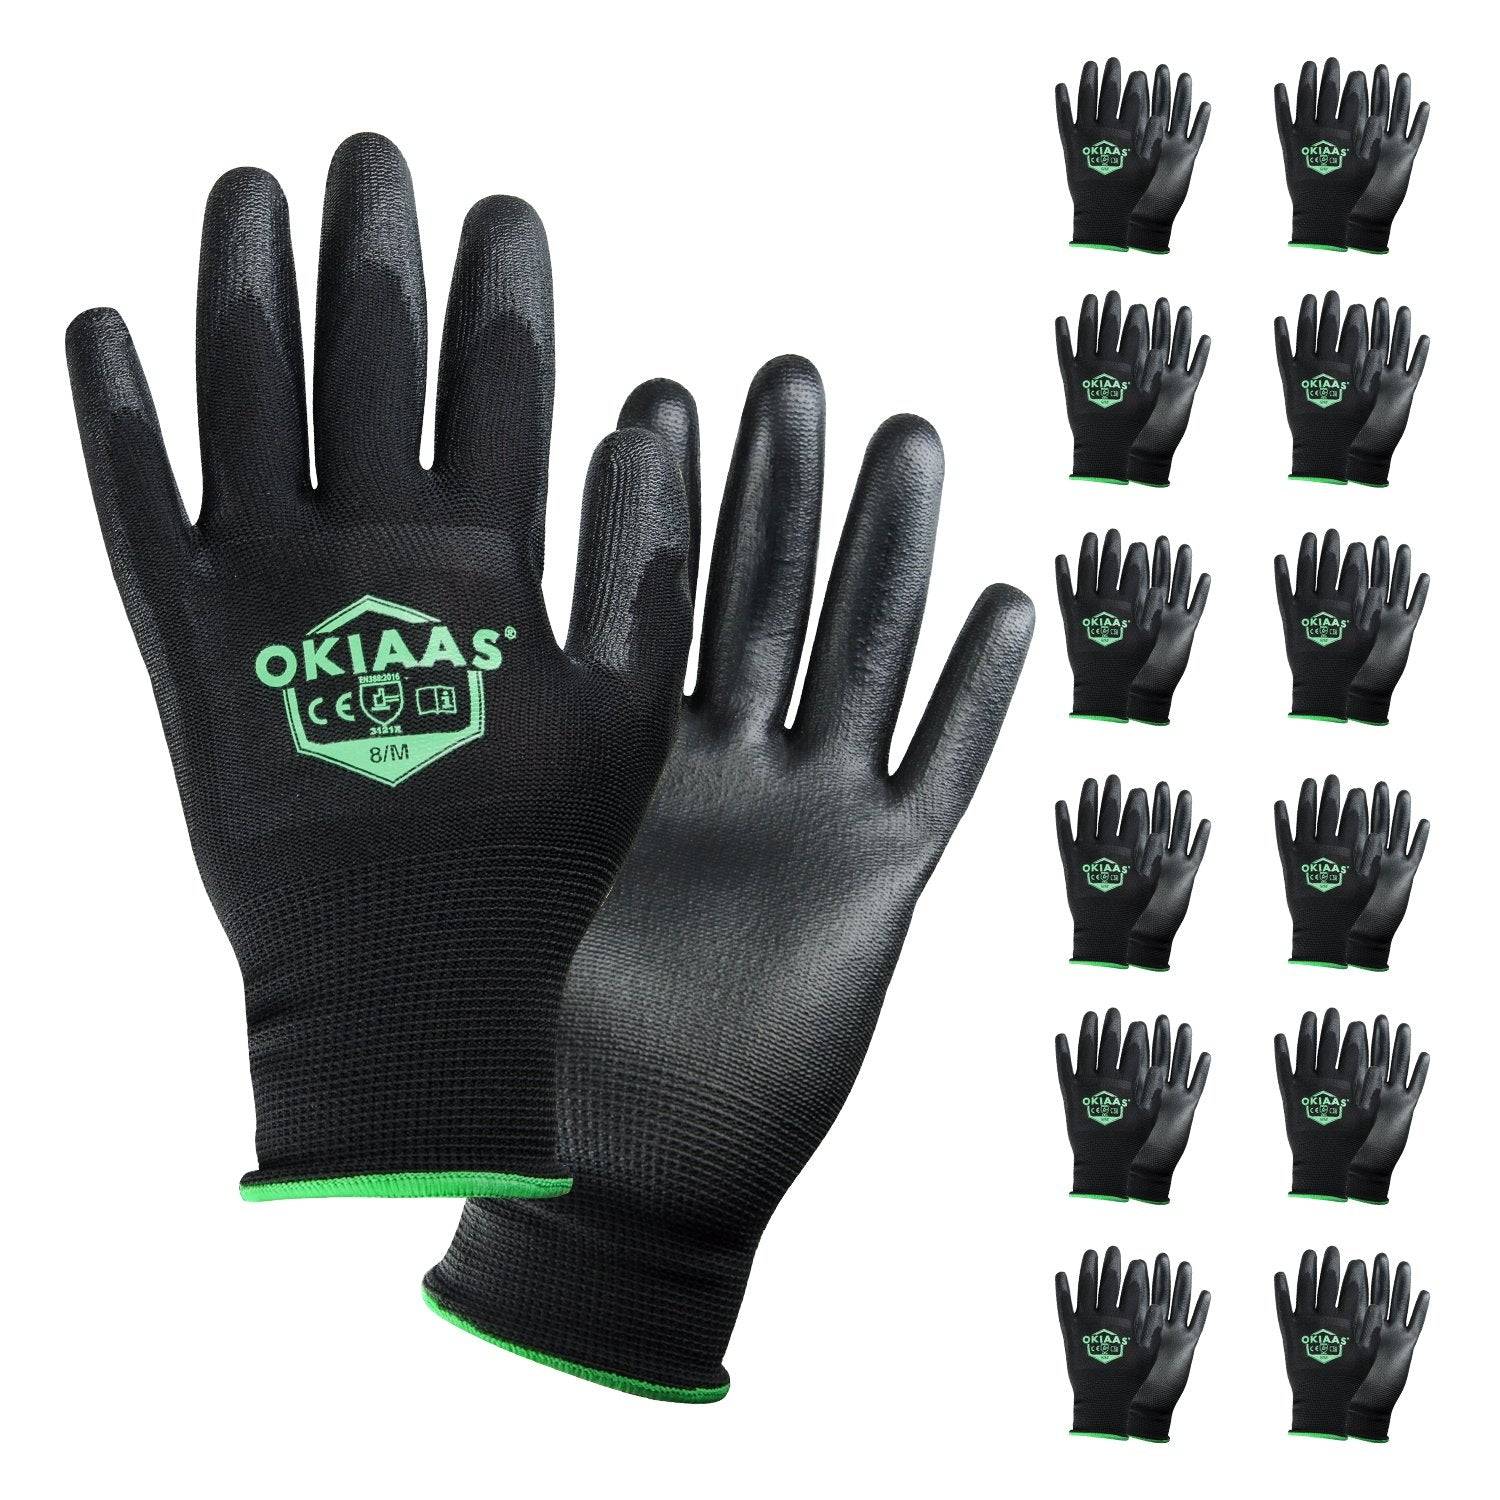 Gorilla Grip, Slip Resistant Work Gloves (Black)